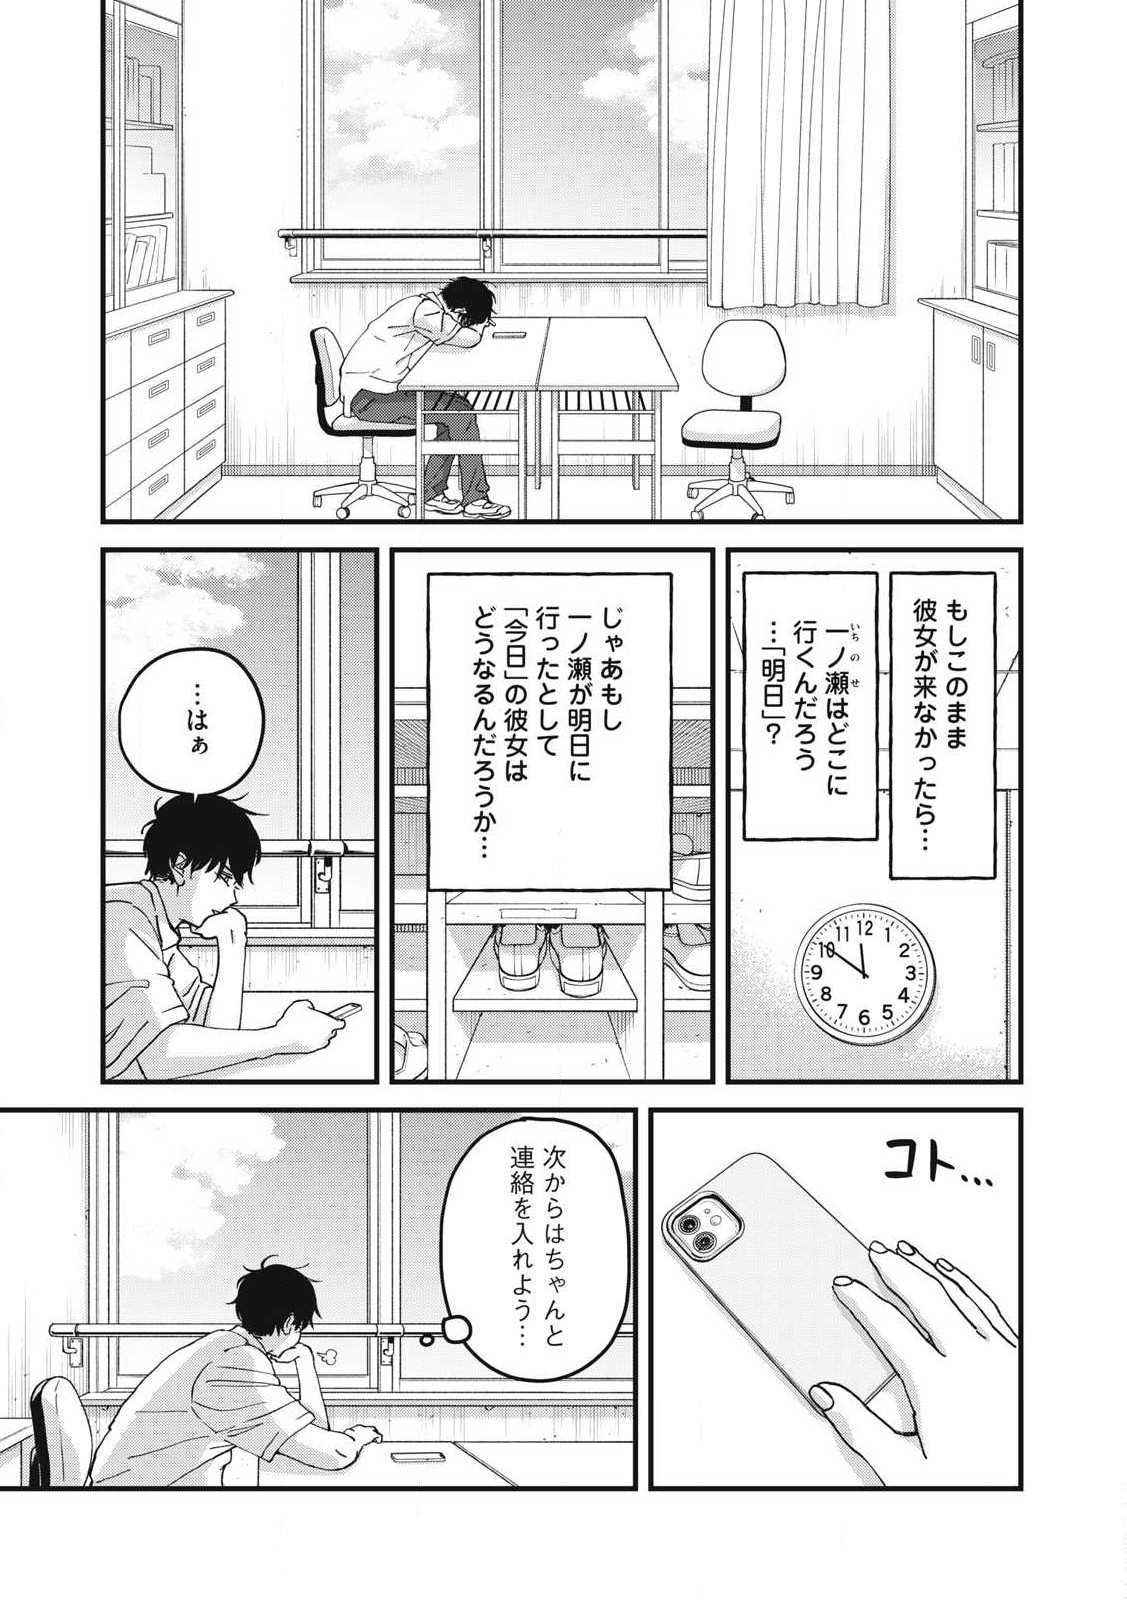 Otona ni Narenai Bokura wa - Chapter 6 - Page 3